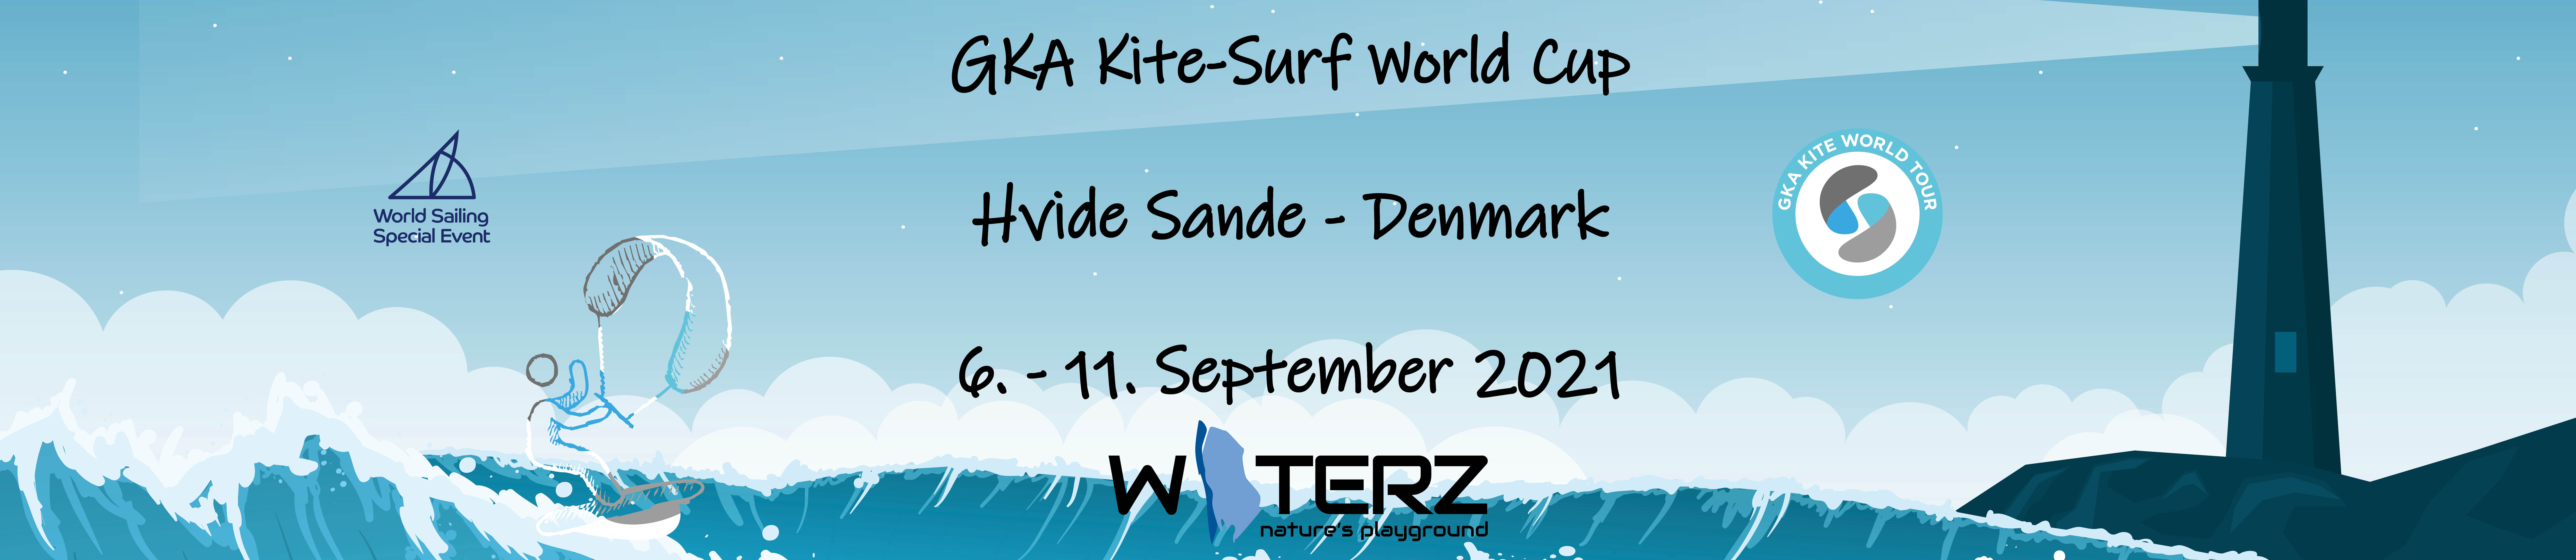 Image for GKA Kite-Surf World Cup Denmark 2021